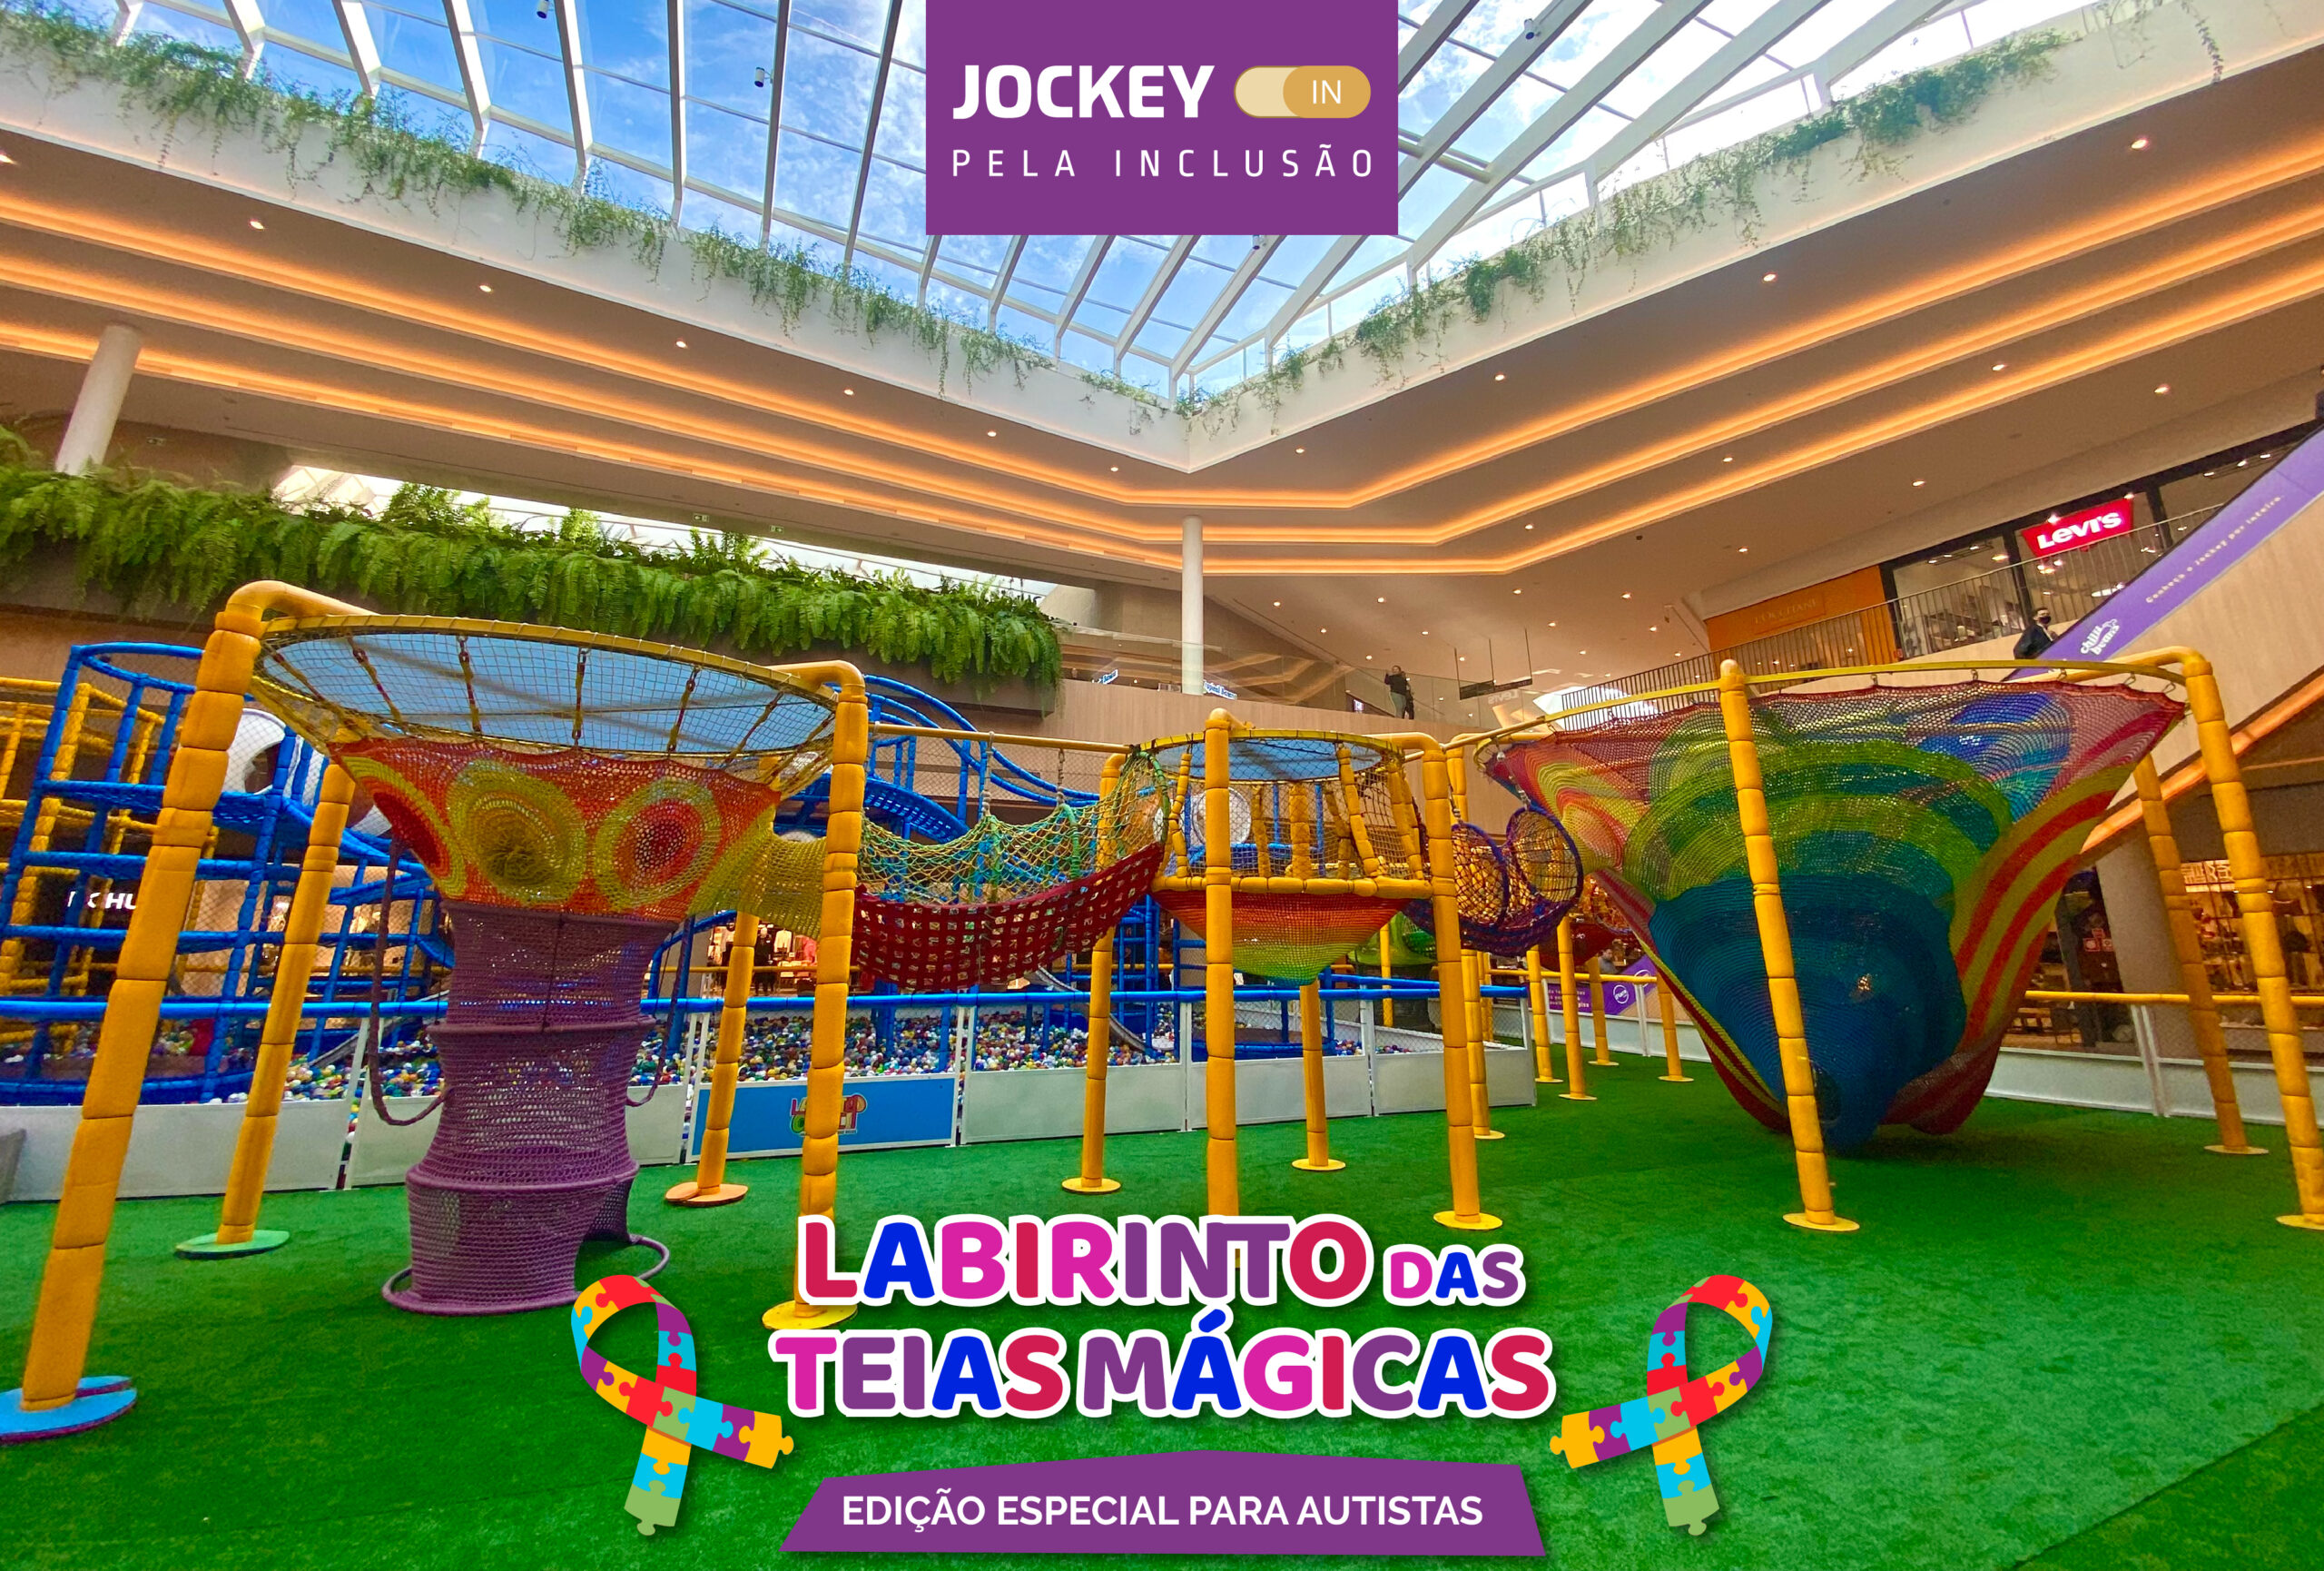 Jockey Plaza Shopping promove manhã inclusiva no Labirinto das Teias Mágicas